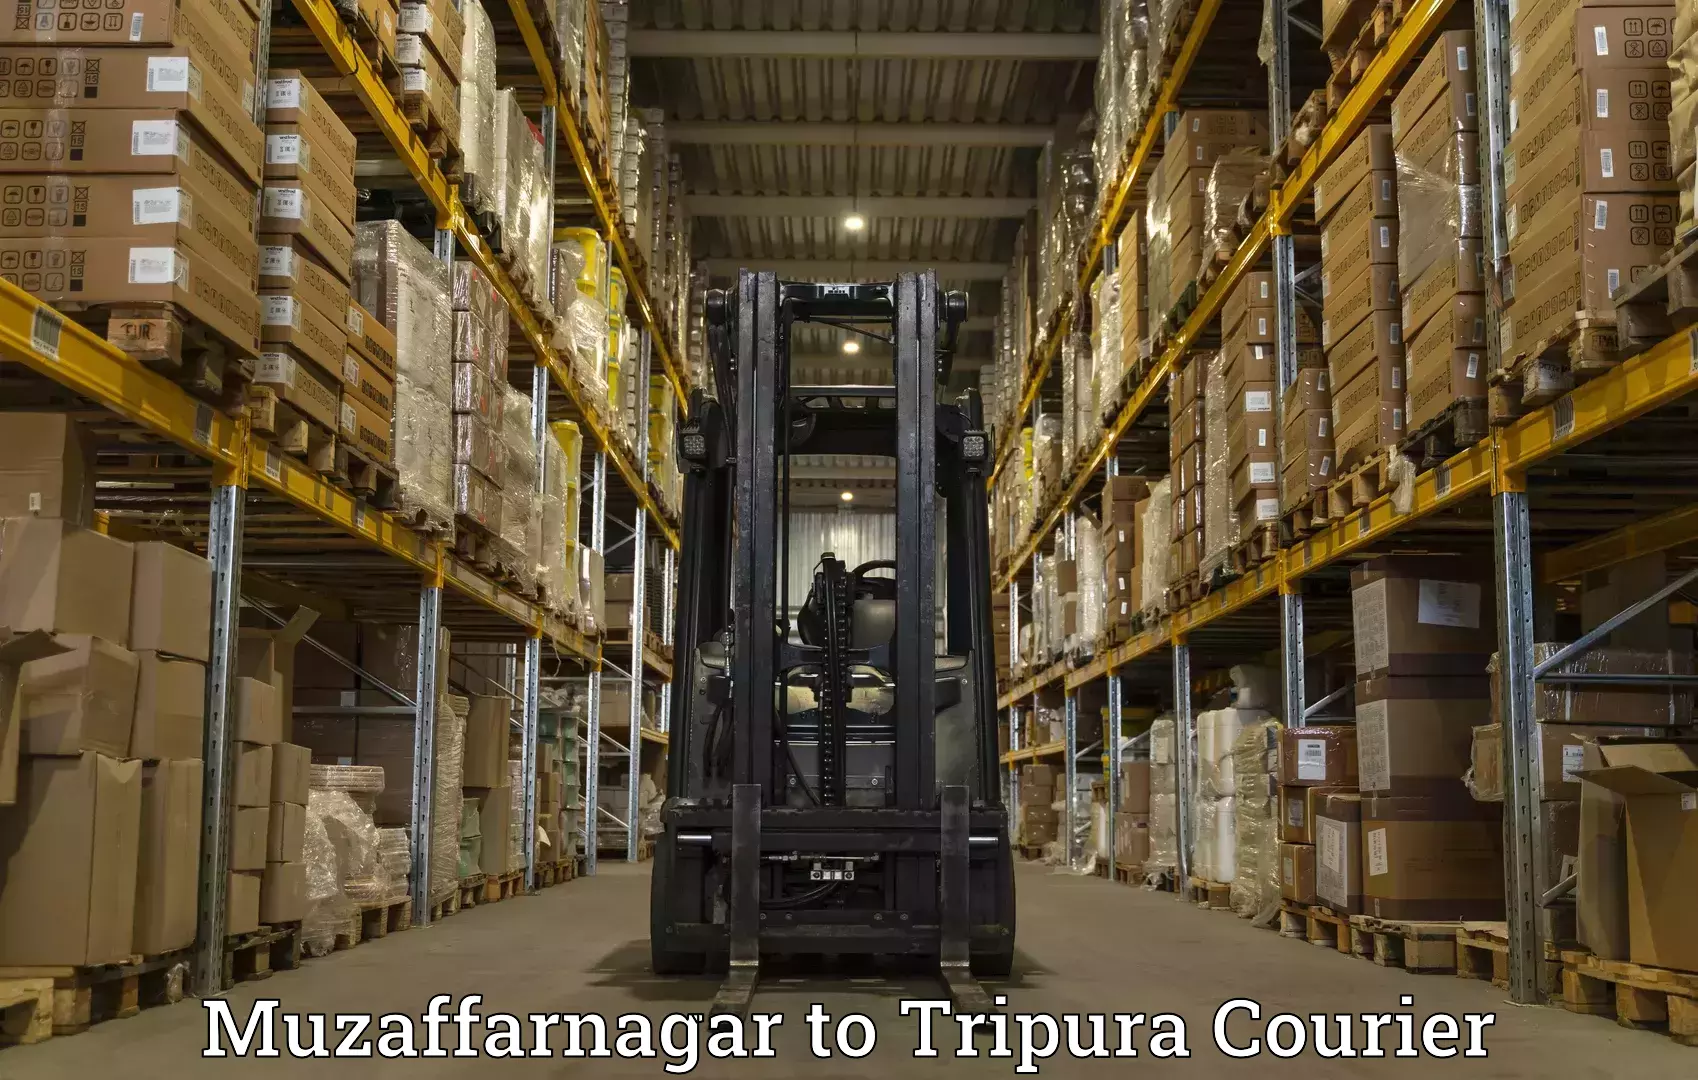 Global shipping networks Muzaffarnagar to IIIT Agartala